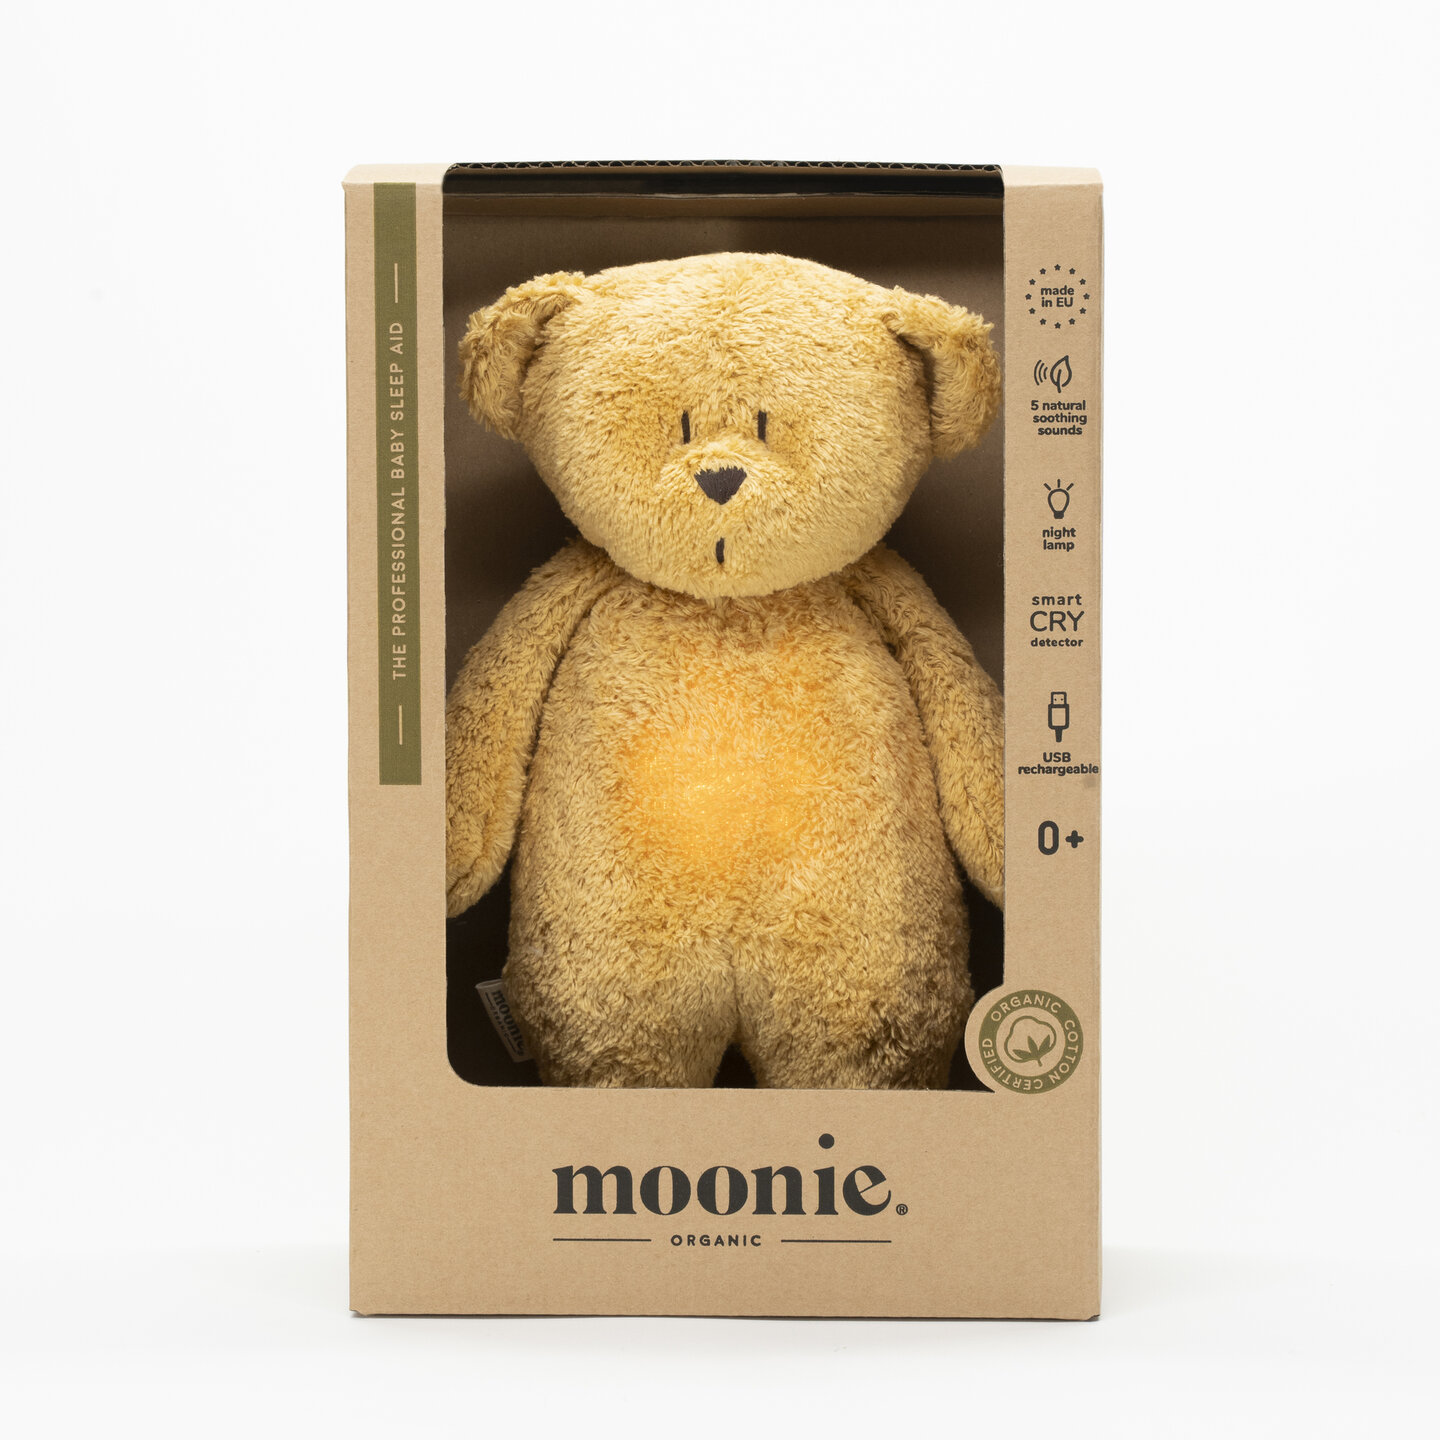 Moonie - The Humming Bear Honey Natur heeft 5 kalmerende geluiden en LED lichtjes in 7 kleuren